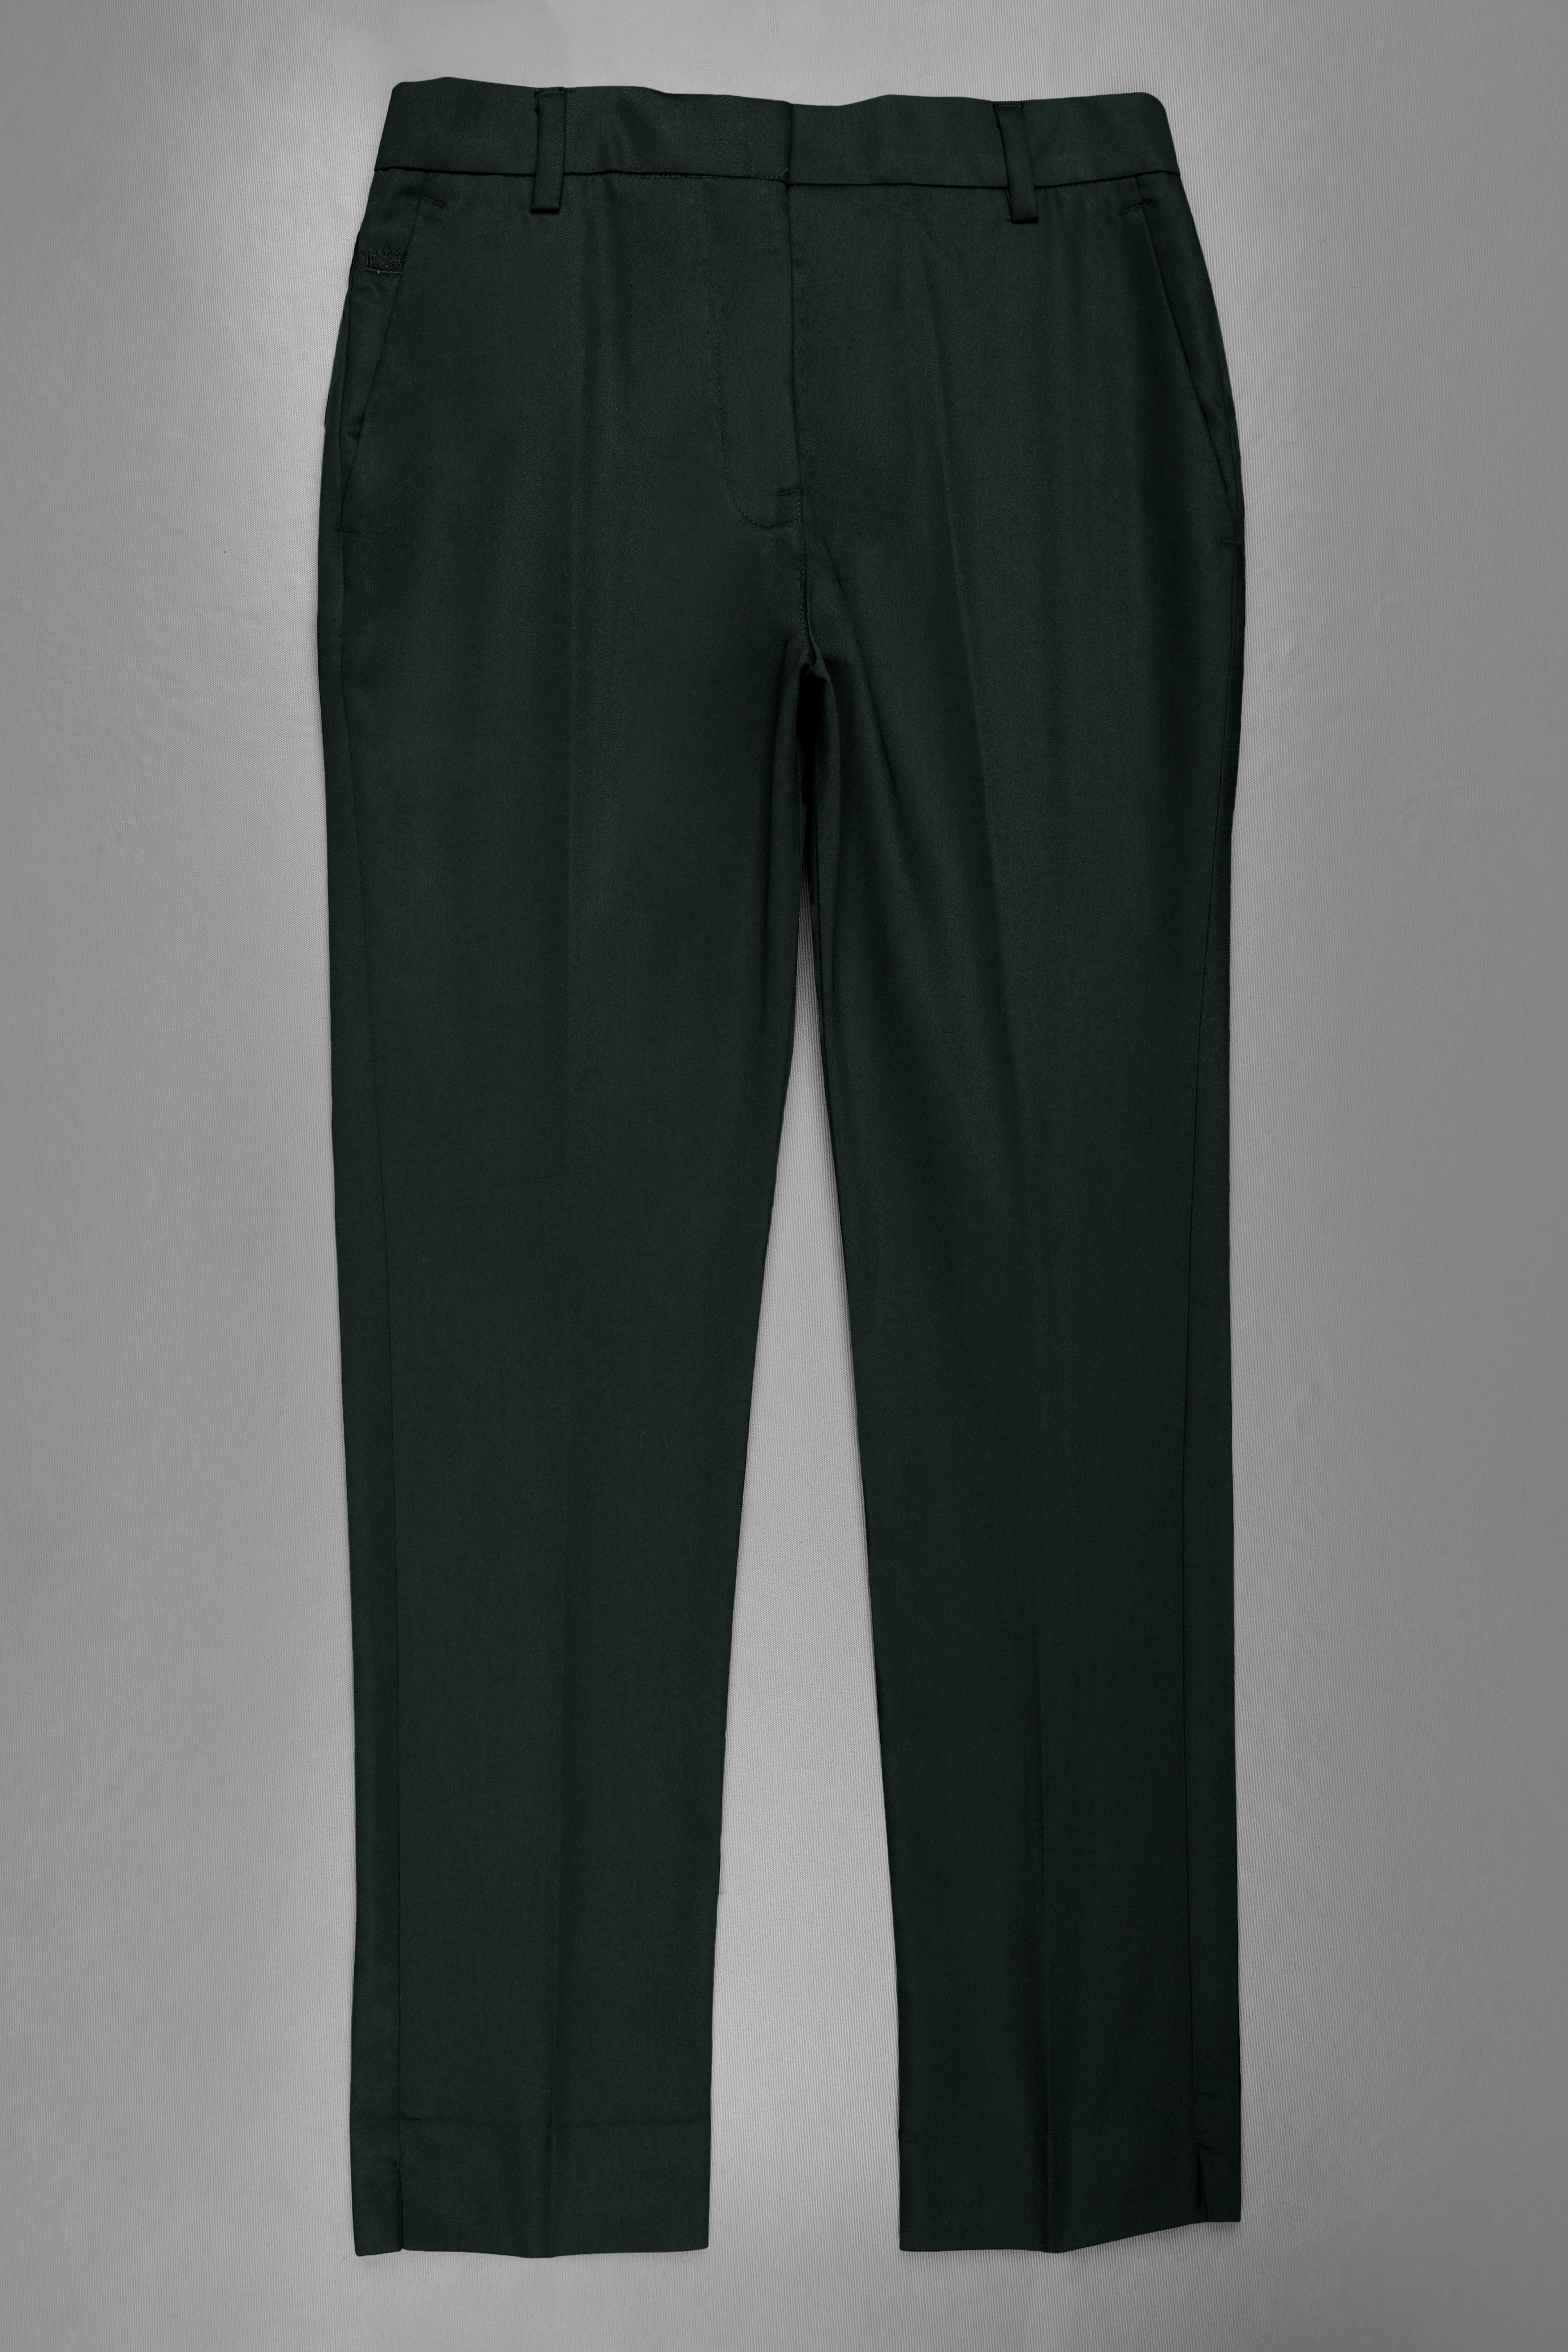 Juniper Green Subtle Sheen Women's Pant